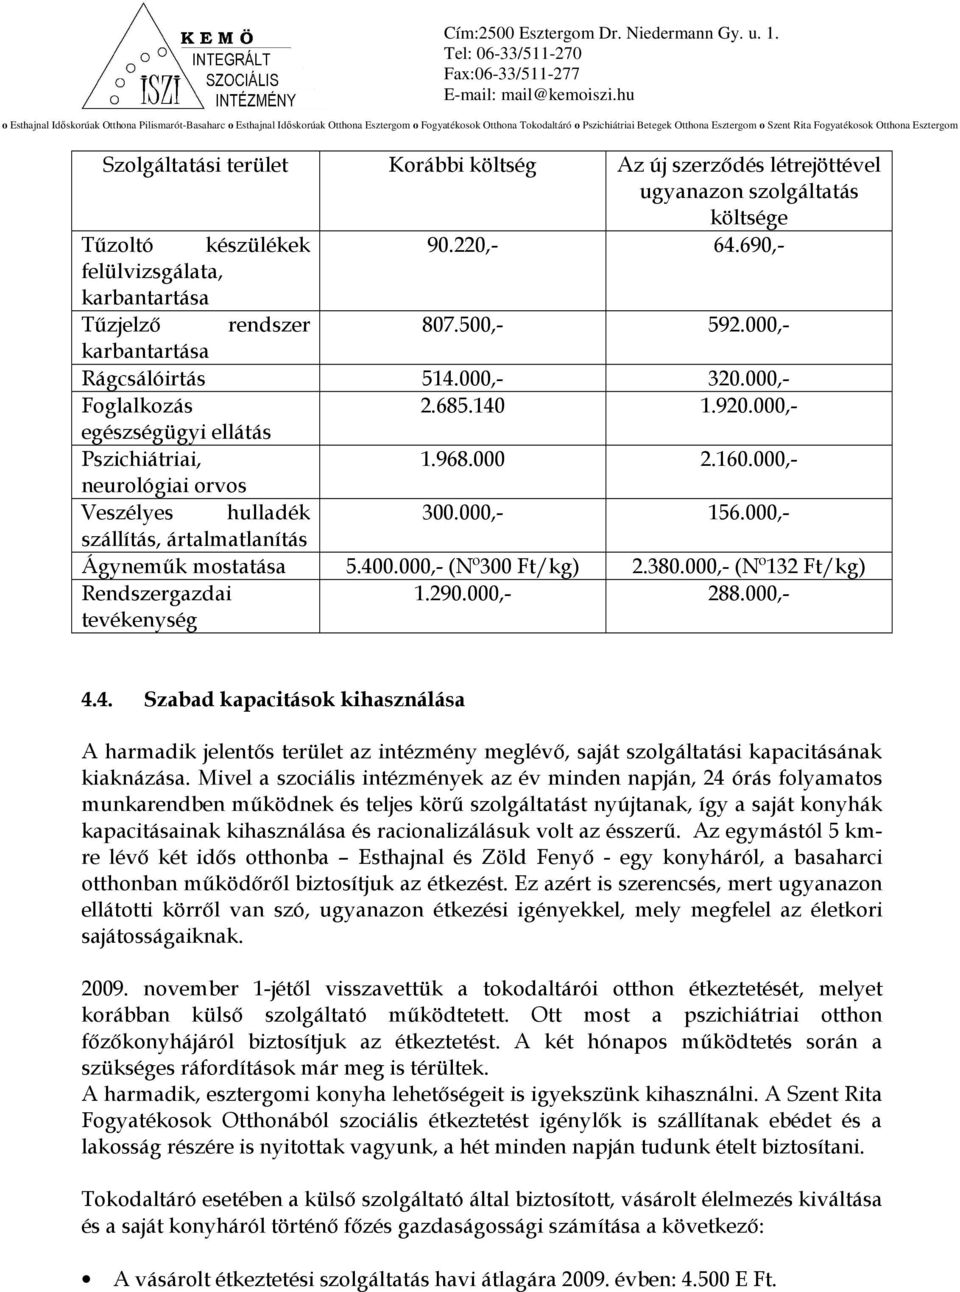 000,- szállítás, ártalmatlanítás Ágynemők mostatása 5.400.000,- (Nº300 Ft/kg) 2.380.000,- (Nº132 Ft/kg) Rendszergazdai tevékenység 1.290.000,- 288.000,- 4.4. Szabad kapacitások kihasználása A harmadik jelentıs terület az intézmény meglévı, saját szolgáltatási kapacitásának kiaknázása.